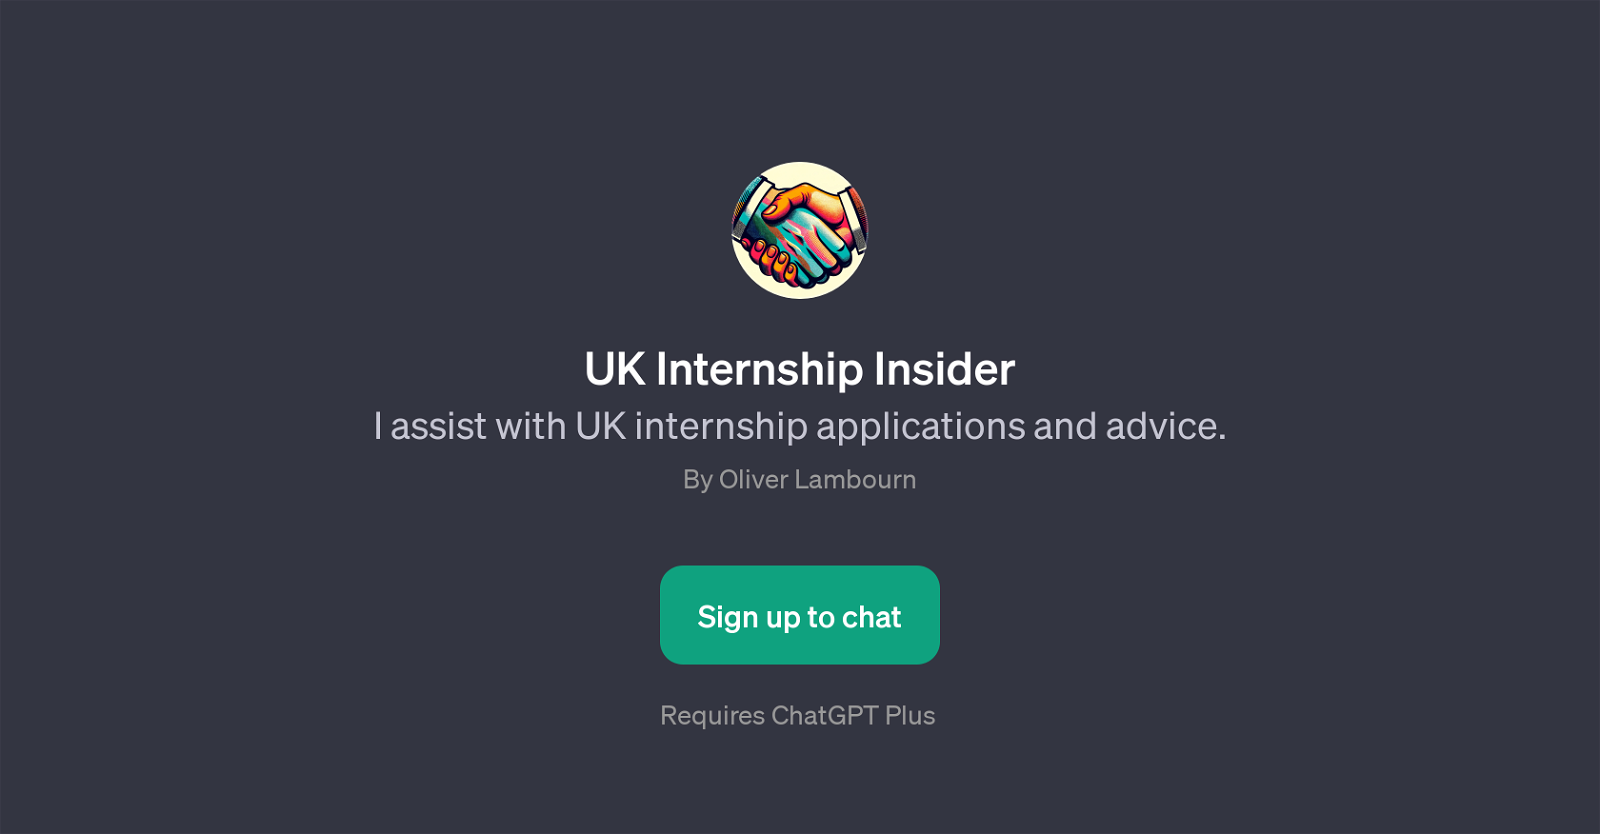 UK Internship Insider website